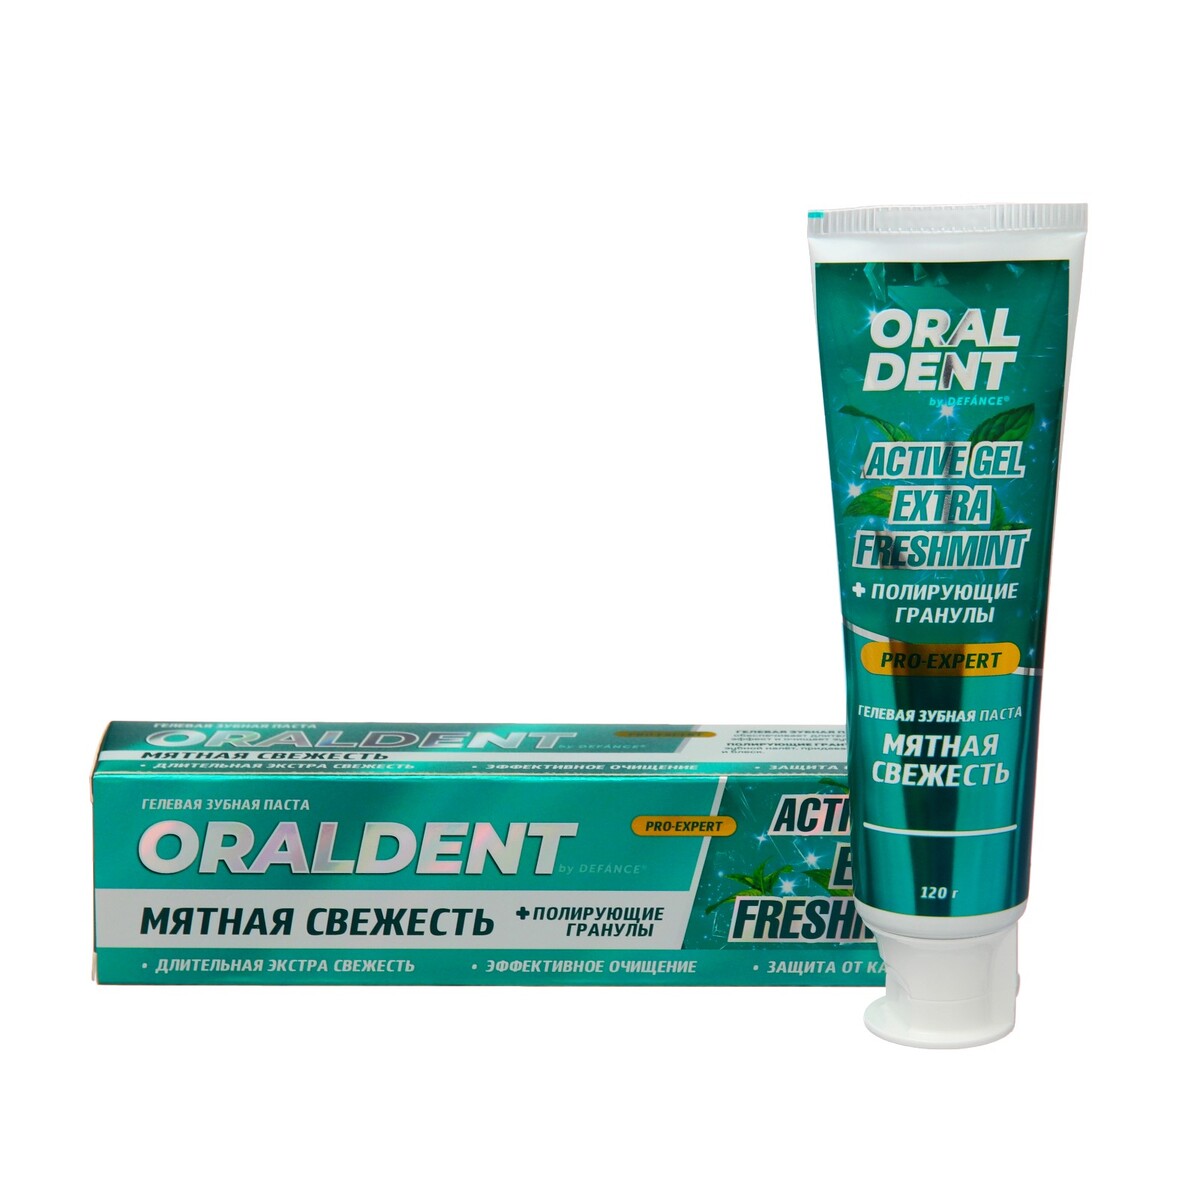 Зубная паста defance oraldent active gel extra freshmint, 120 г зубная паста pomorin regular бережное отбеливание 100 мл